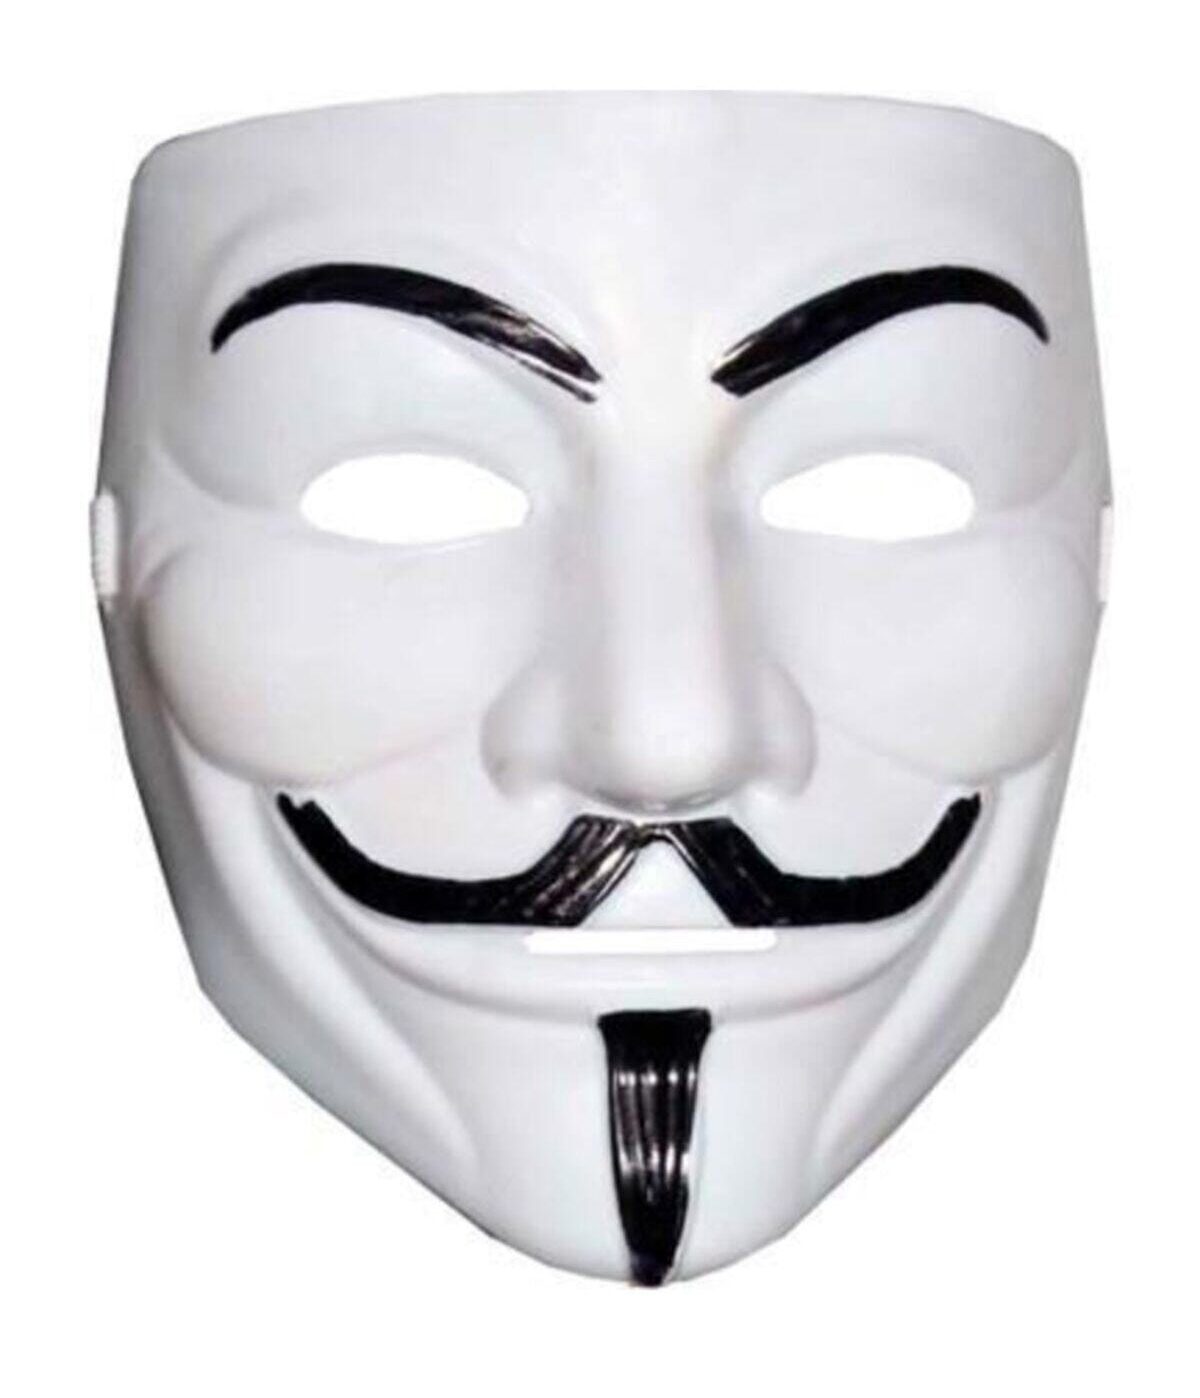 Beyaz Renk V For Vendetta Maskesi Yerli Üretim (4172)